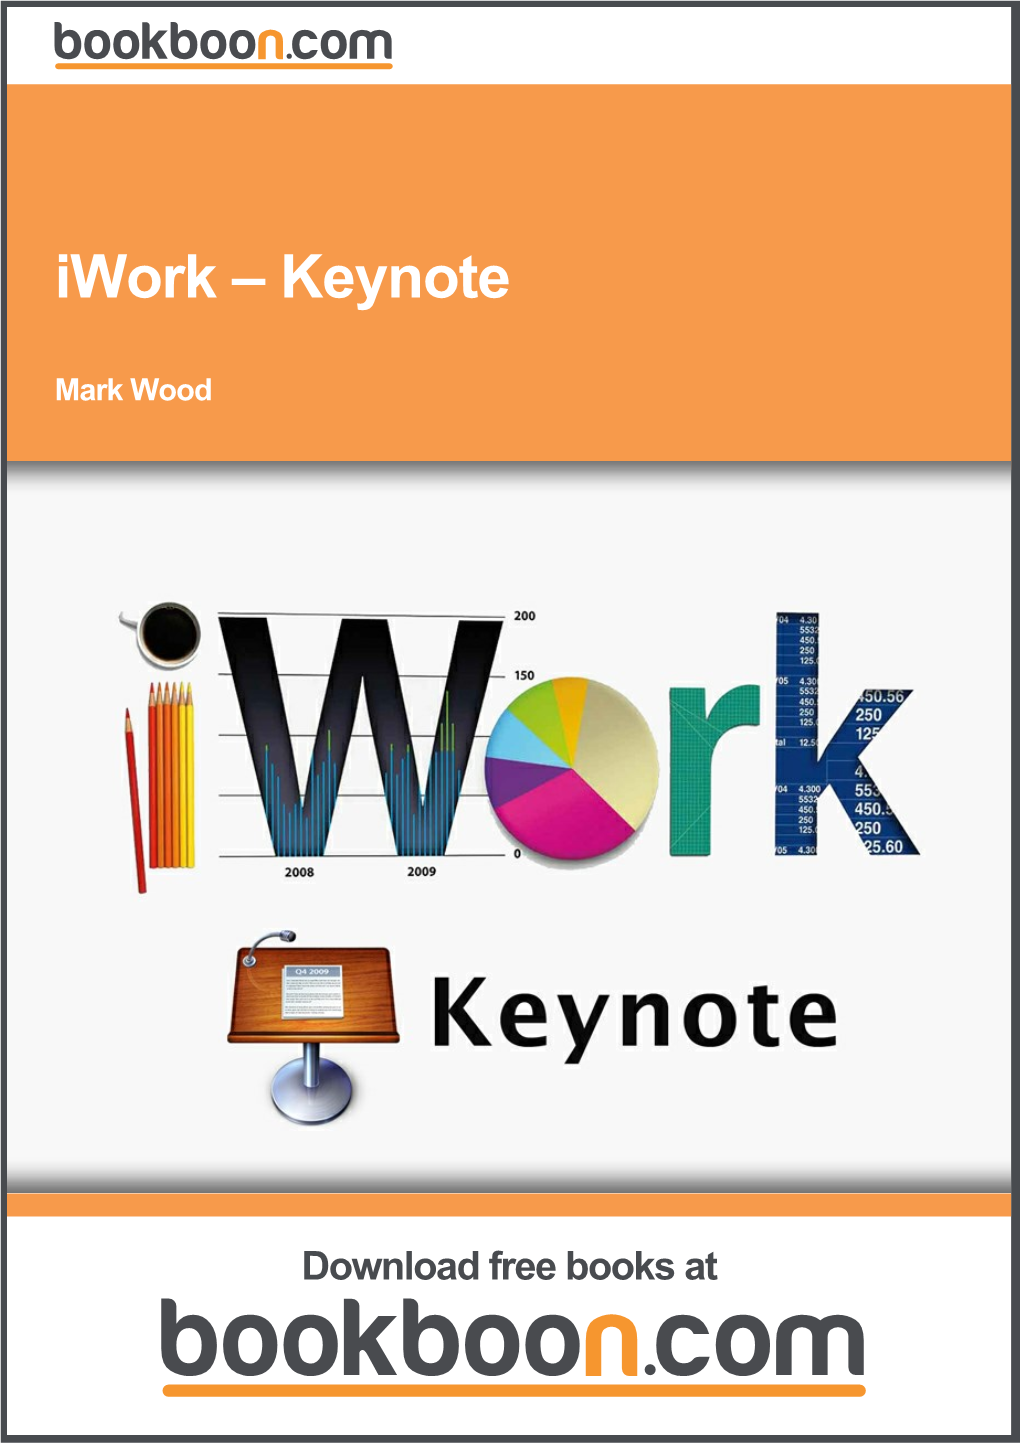 Iwork – Keynote